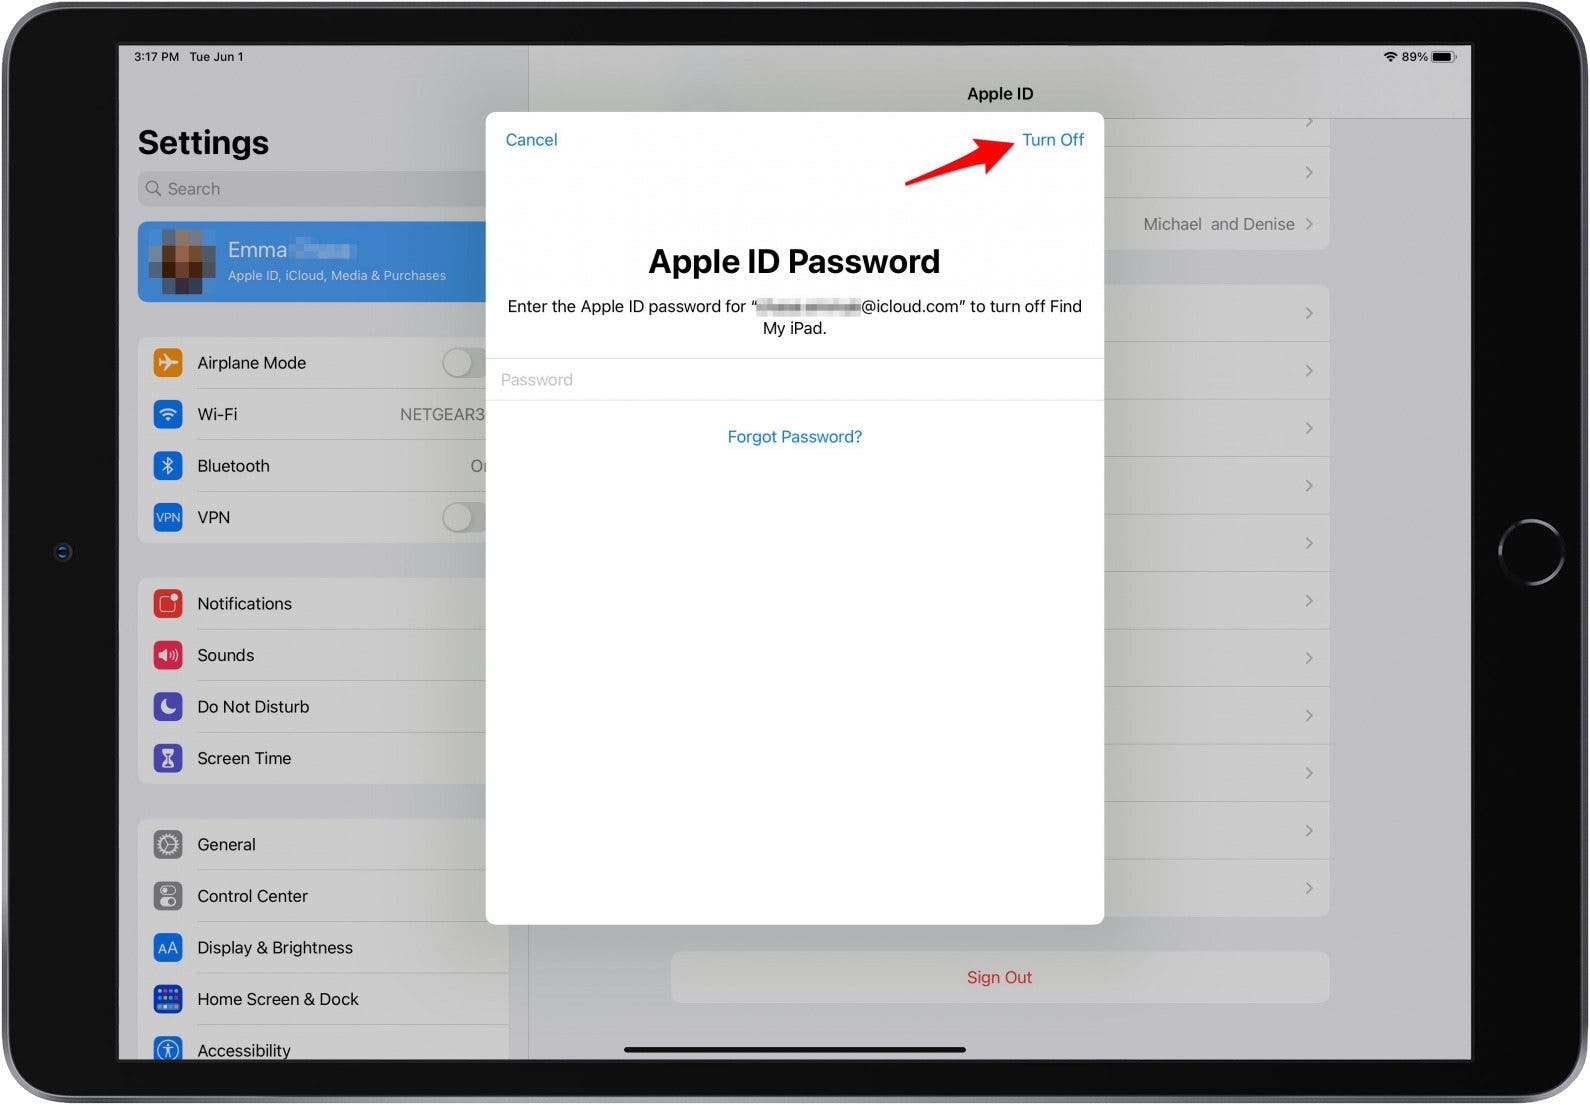 Tippen Sie auf Deaktivieren, um iCloud auf dem iPad zu deaktivieren und das iPad zu verkaufen